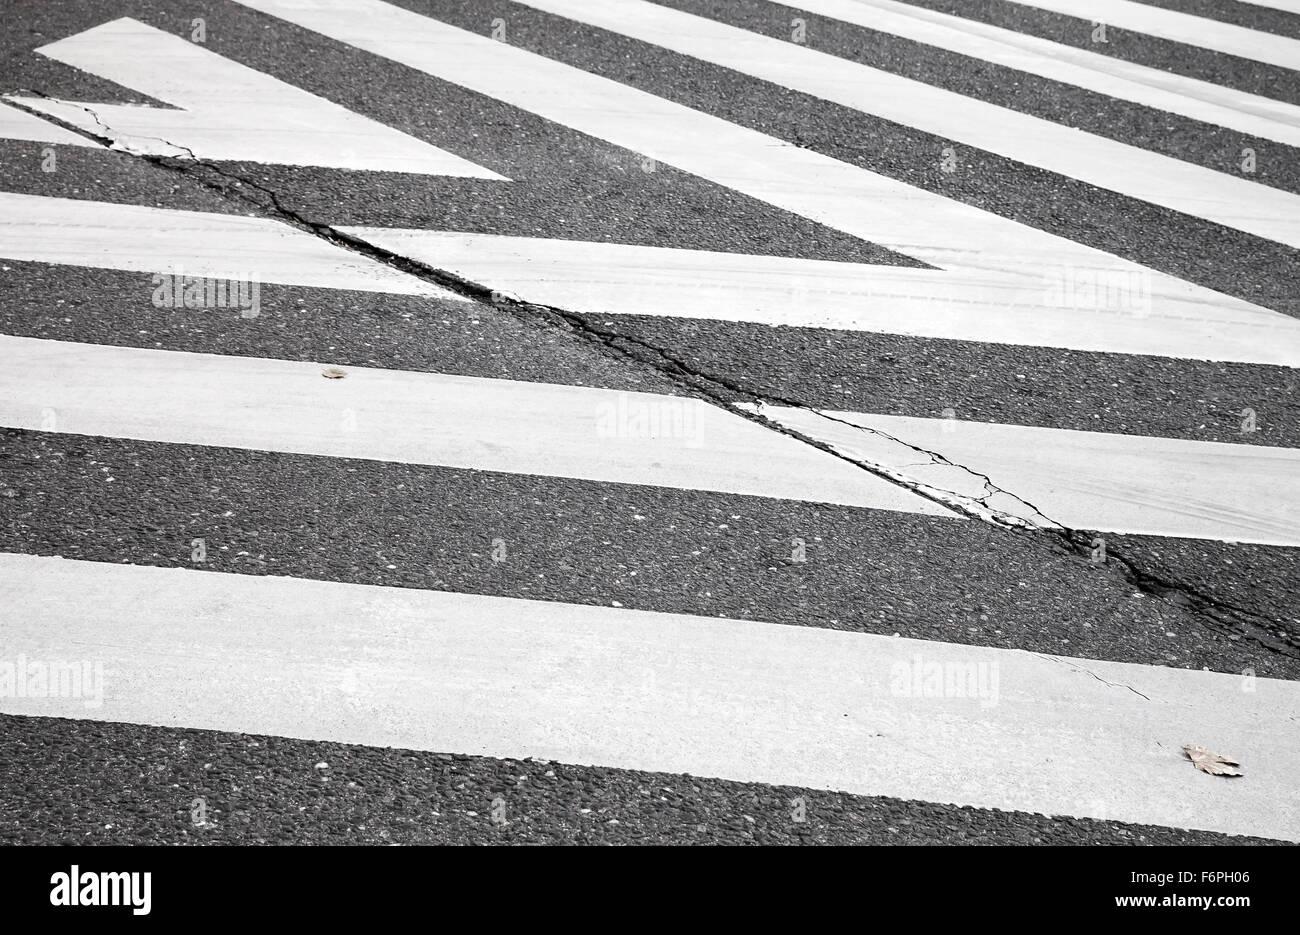 La route d'asphalte de couleur gris foncé avec passage pour piétons signalisation zebra, résumé d'arrière-plan de transport Banque D'Images